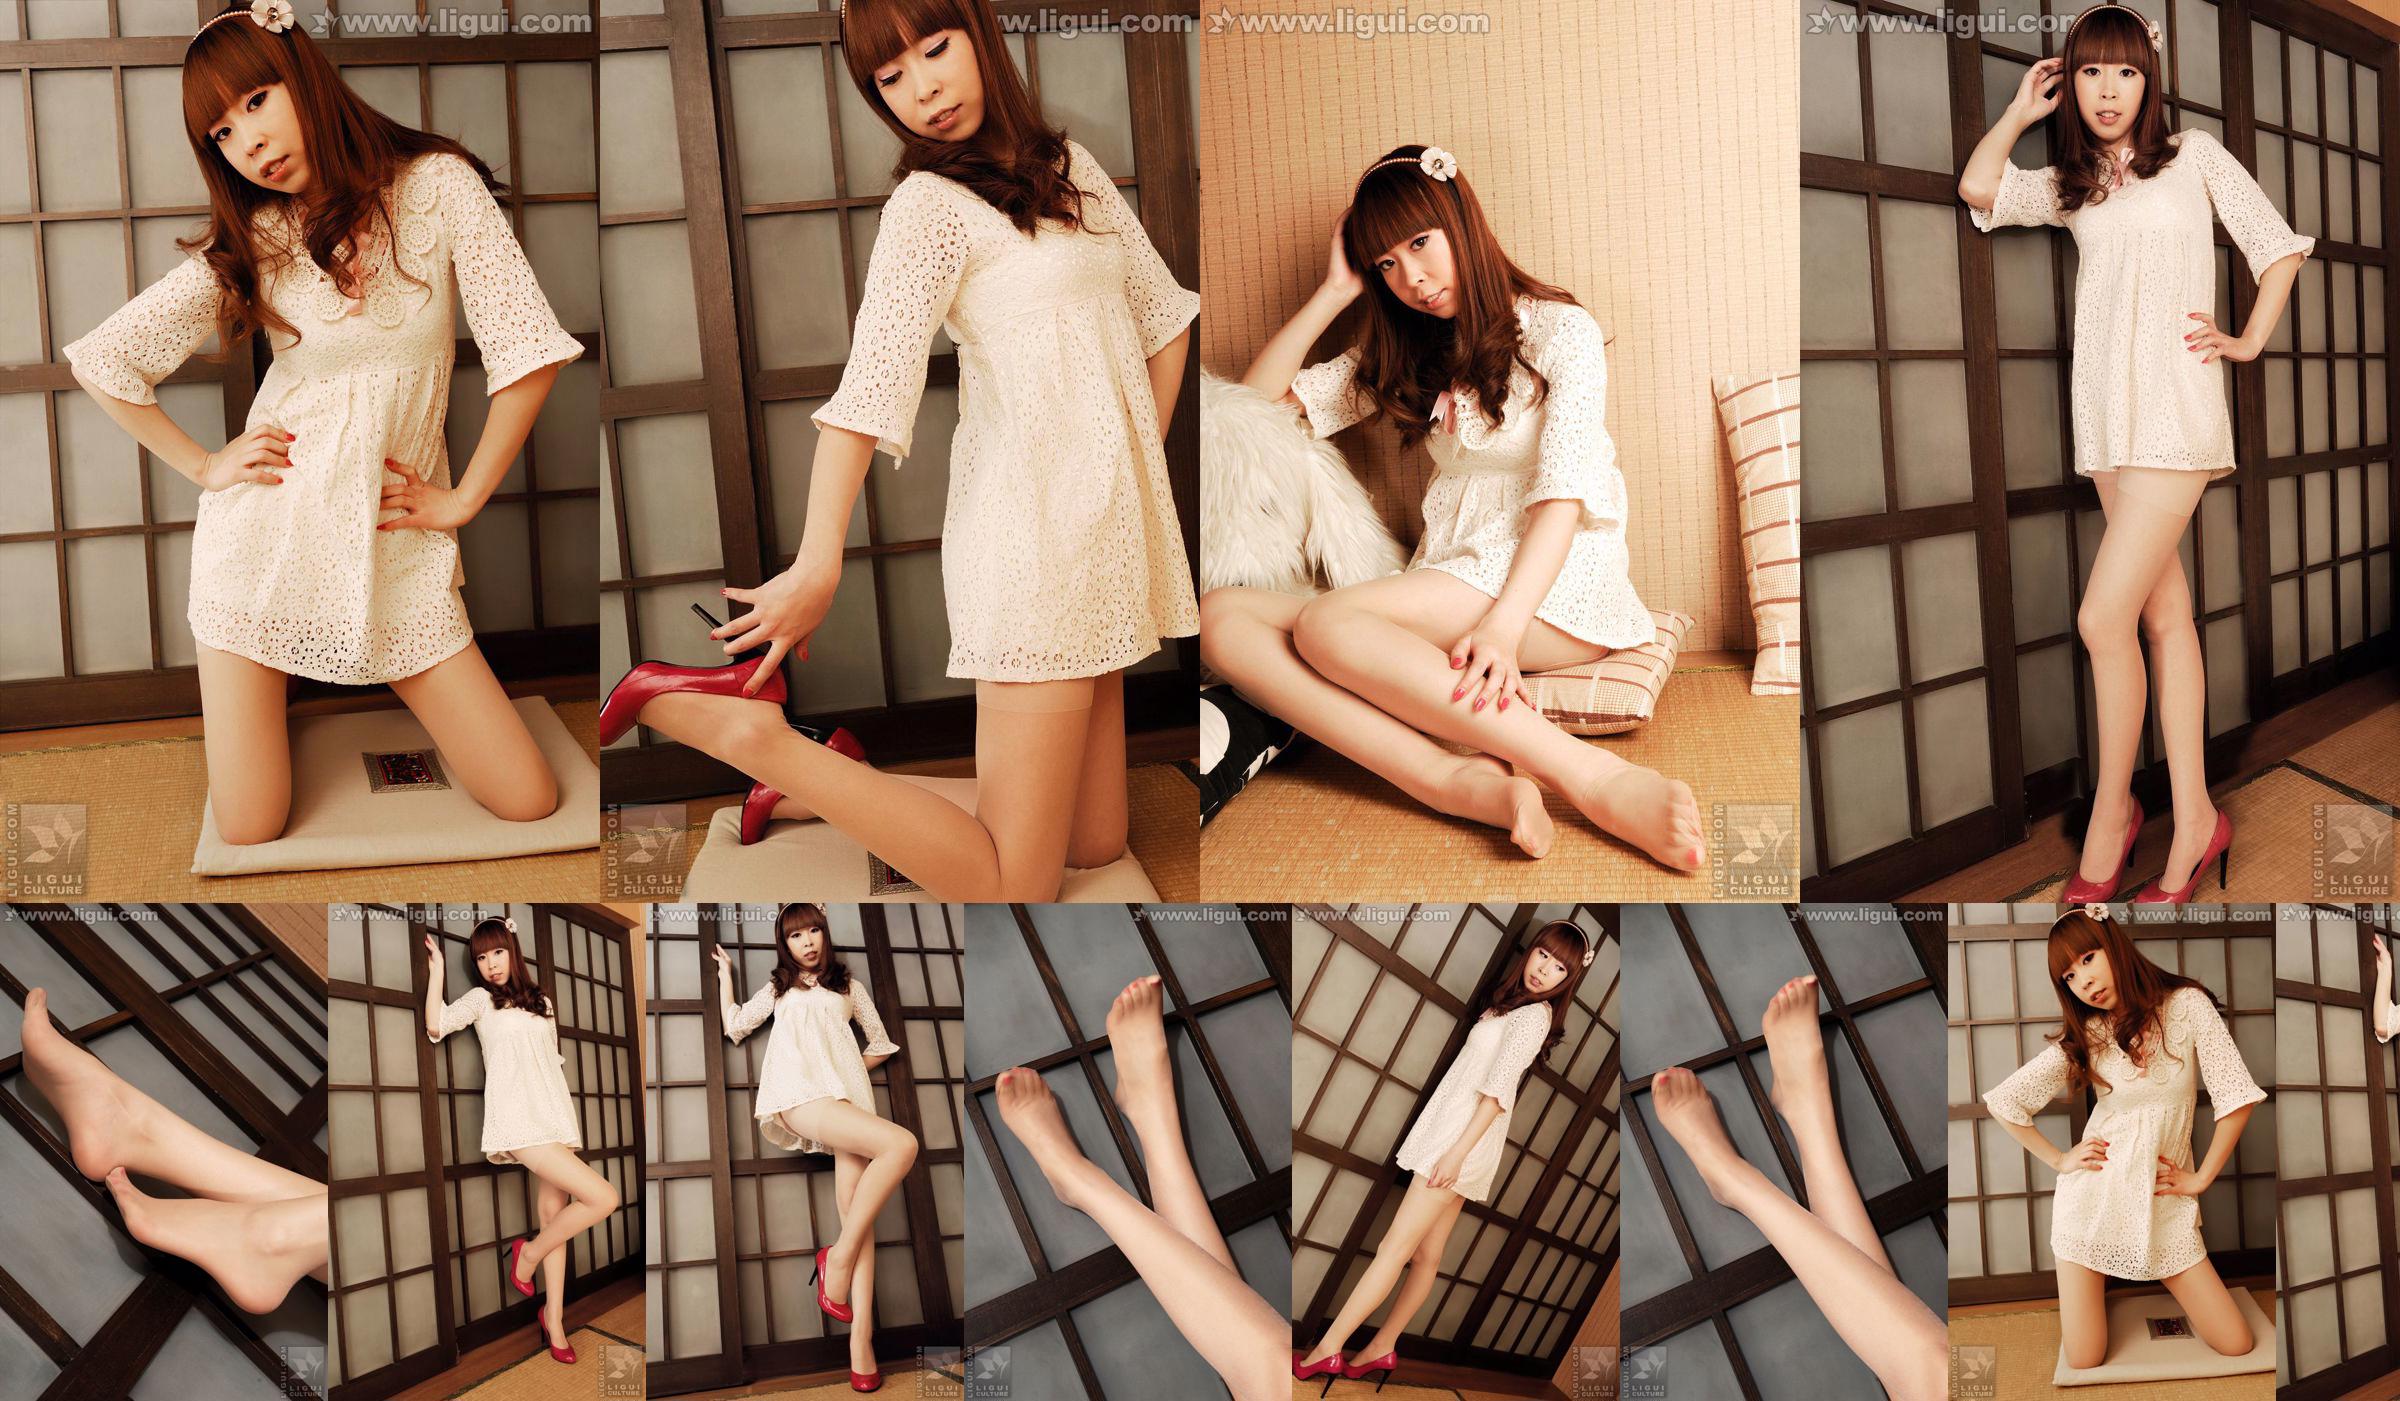 Modelo Vikcy "La tentación del estilo japonés" [丽 柜 LiGui] Fotos de piernas hermosas y pie de jade No.24c75a Página 6